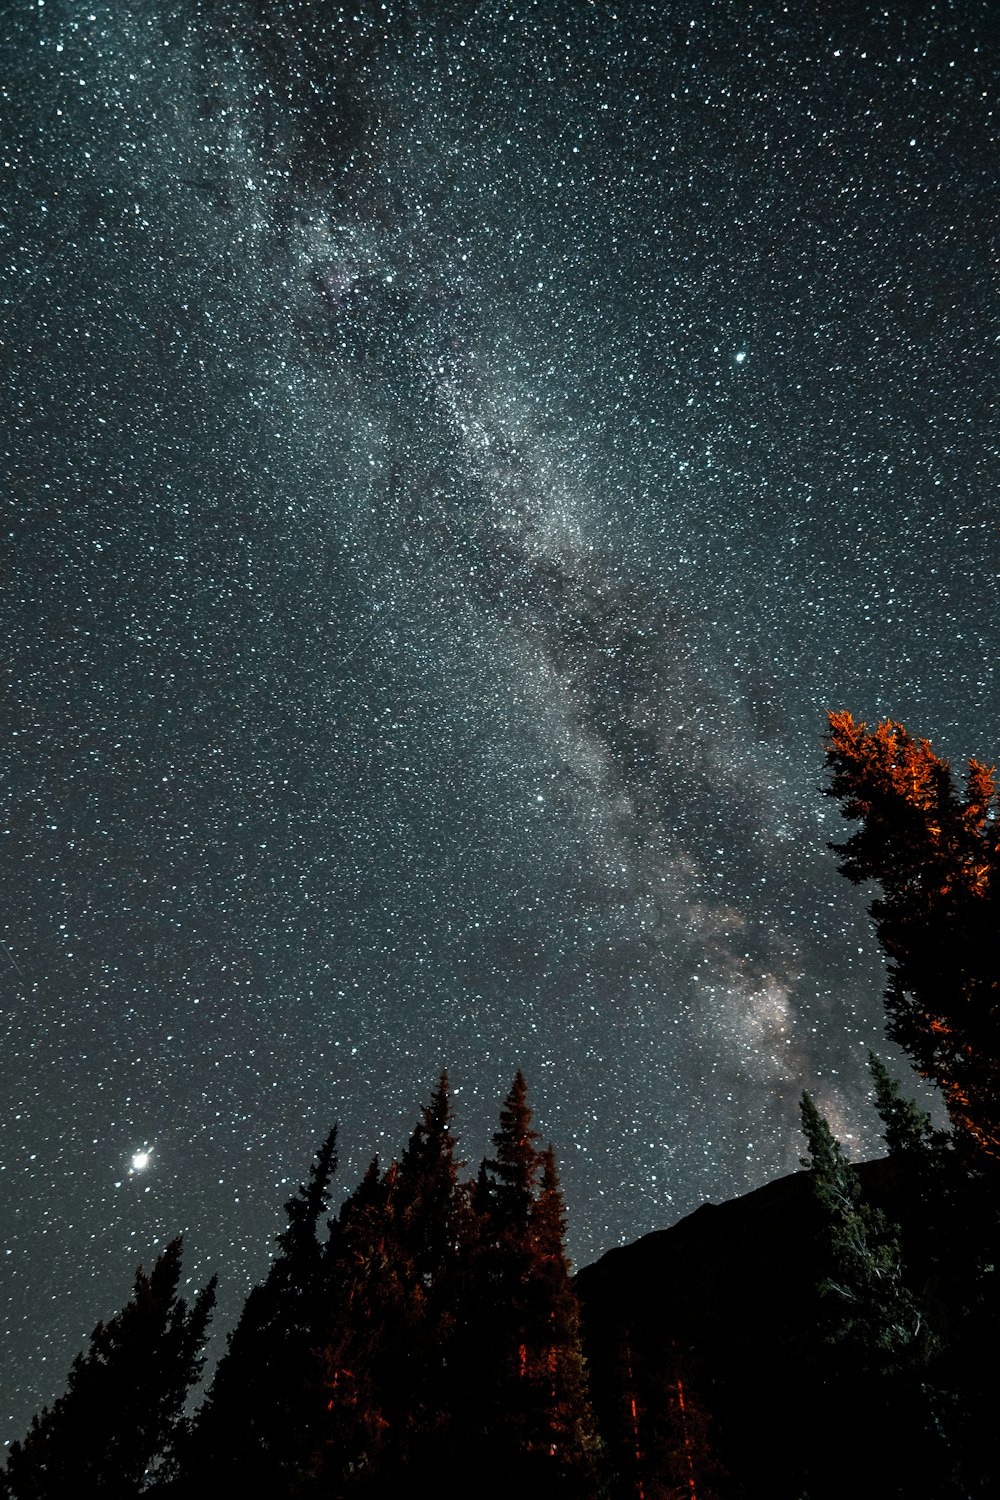 Der Nachthimmel mit Sternen und Bäumen im Vordergrund